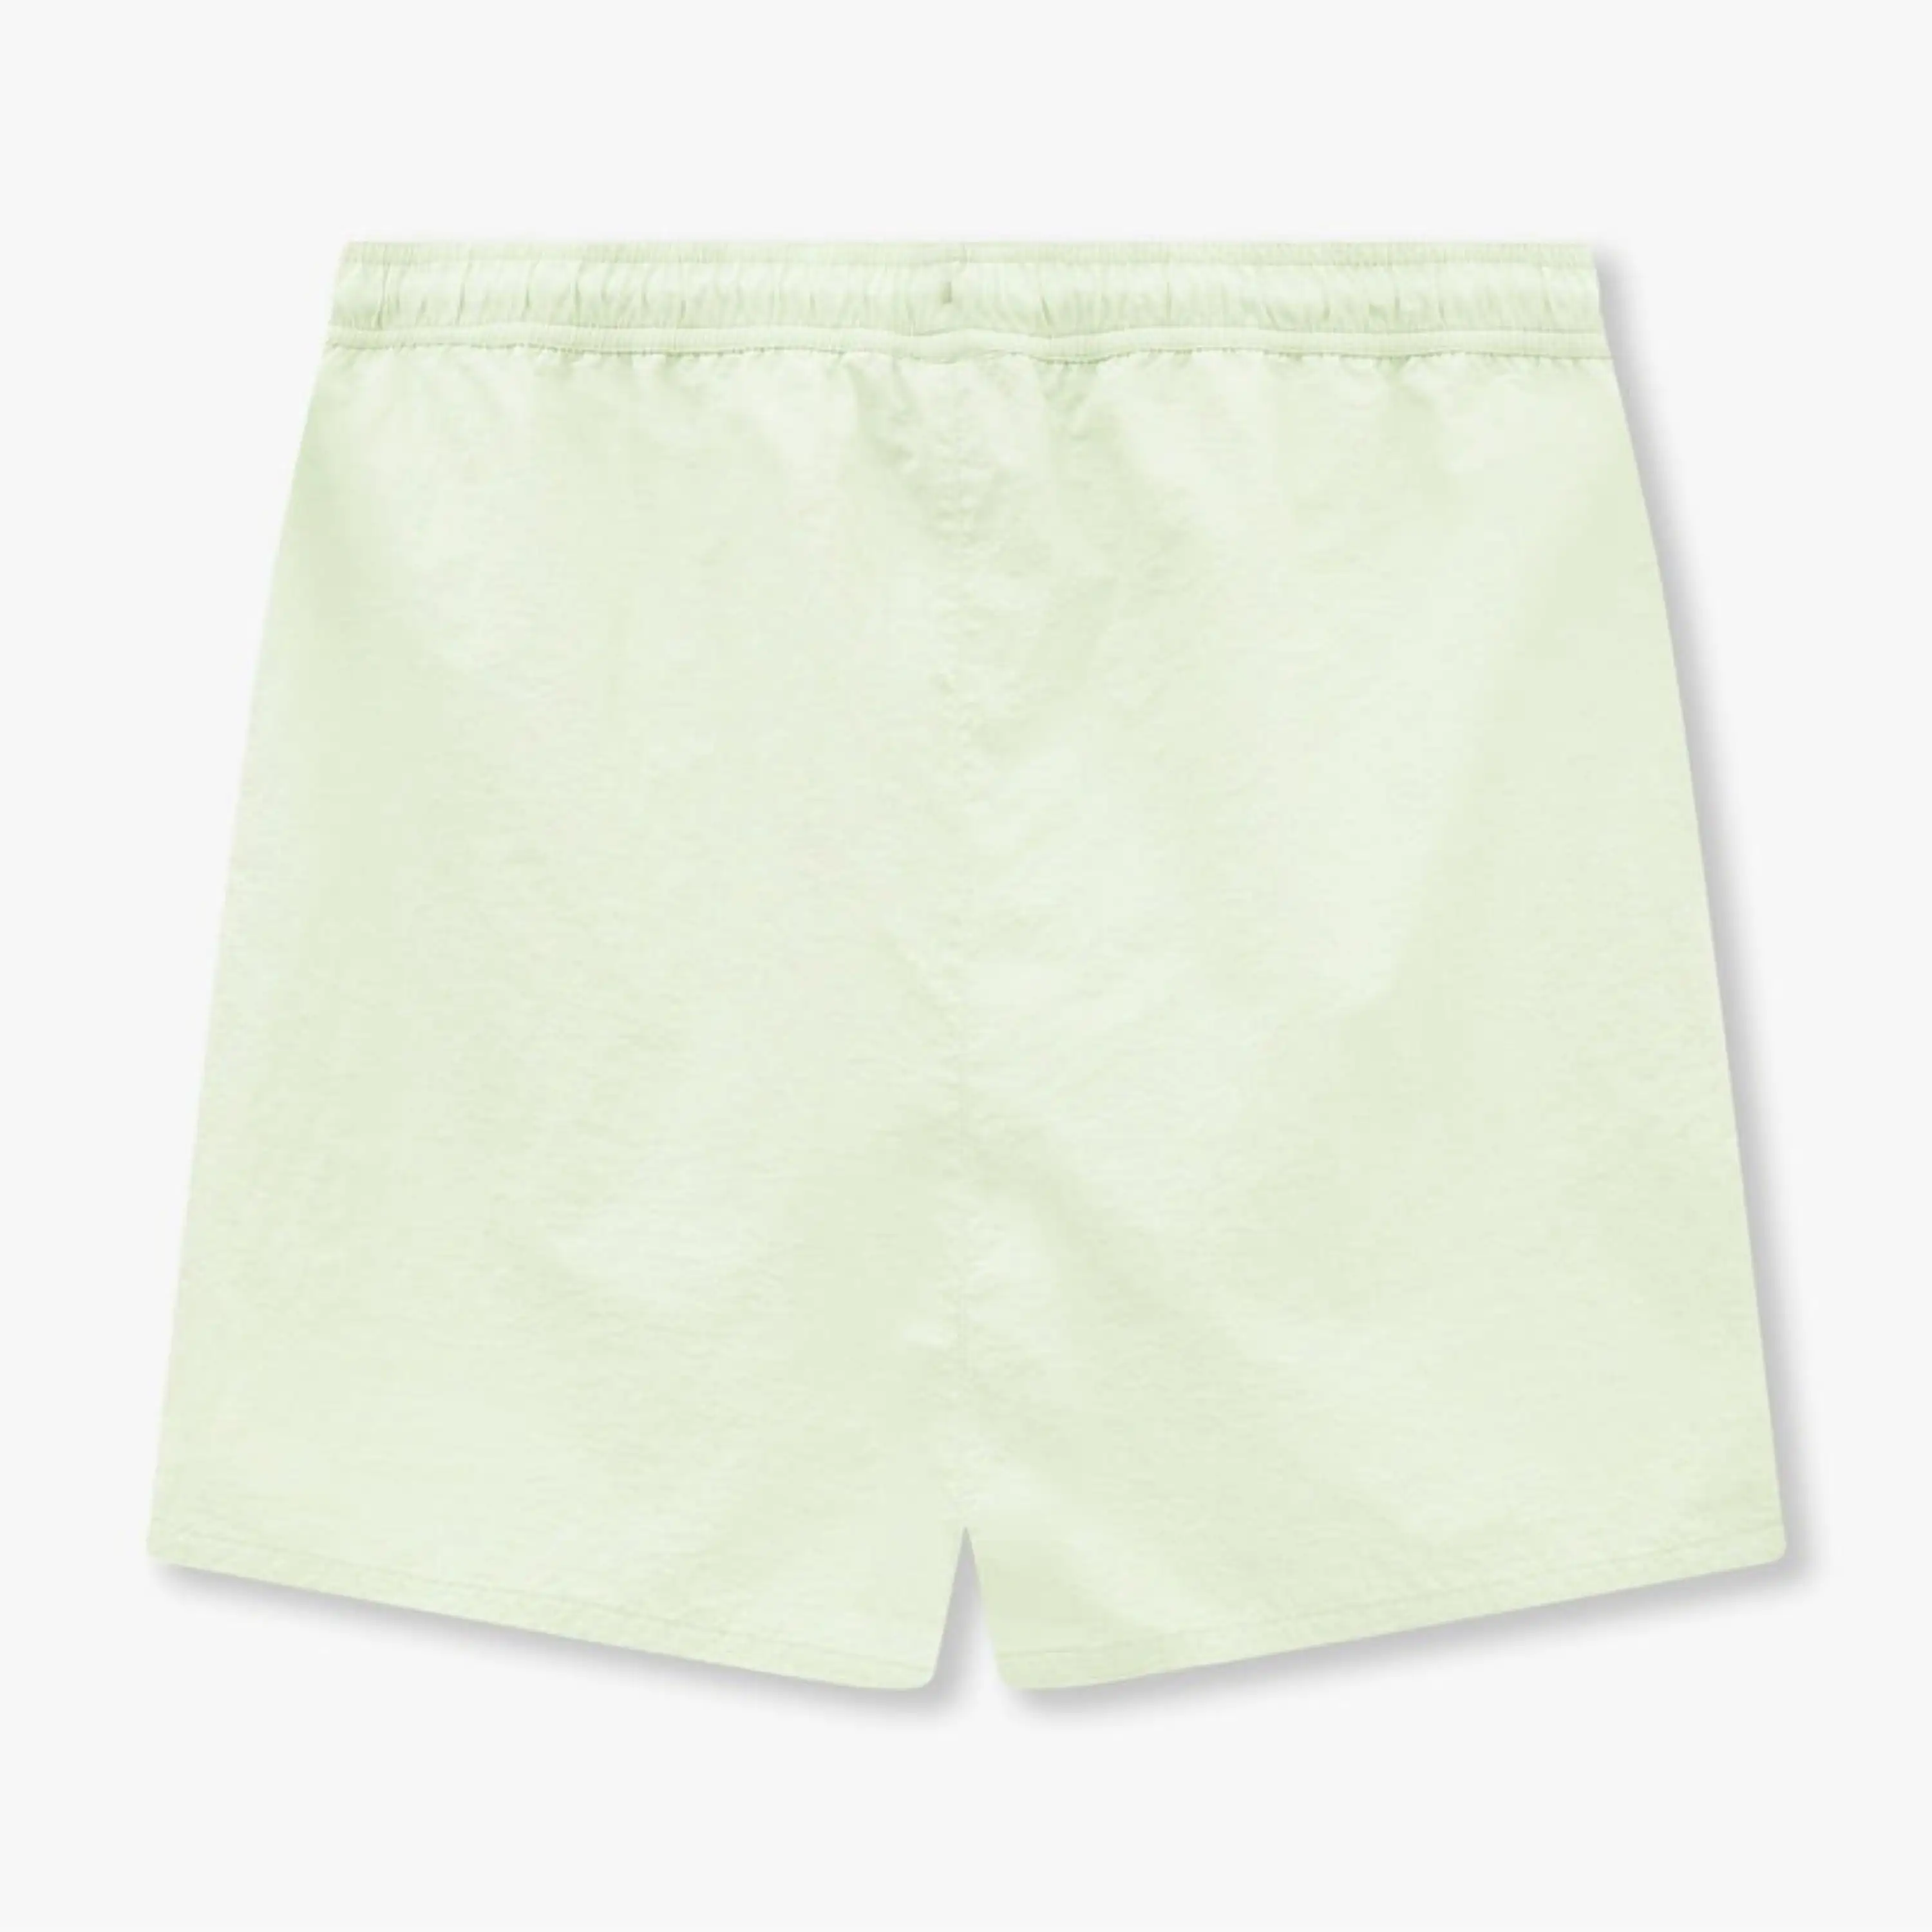 Calção de banho curto personalizado de secagem rápida, shorts de praia com cordão elástico em branco, roupa de banho infantil